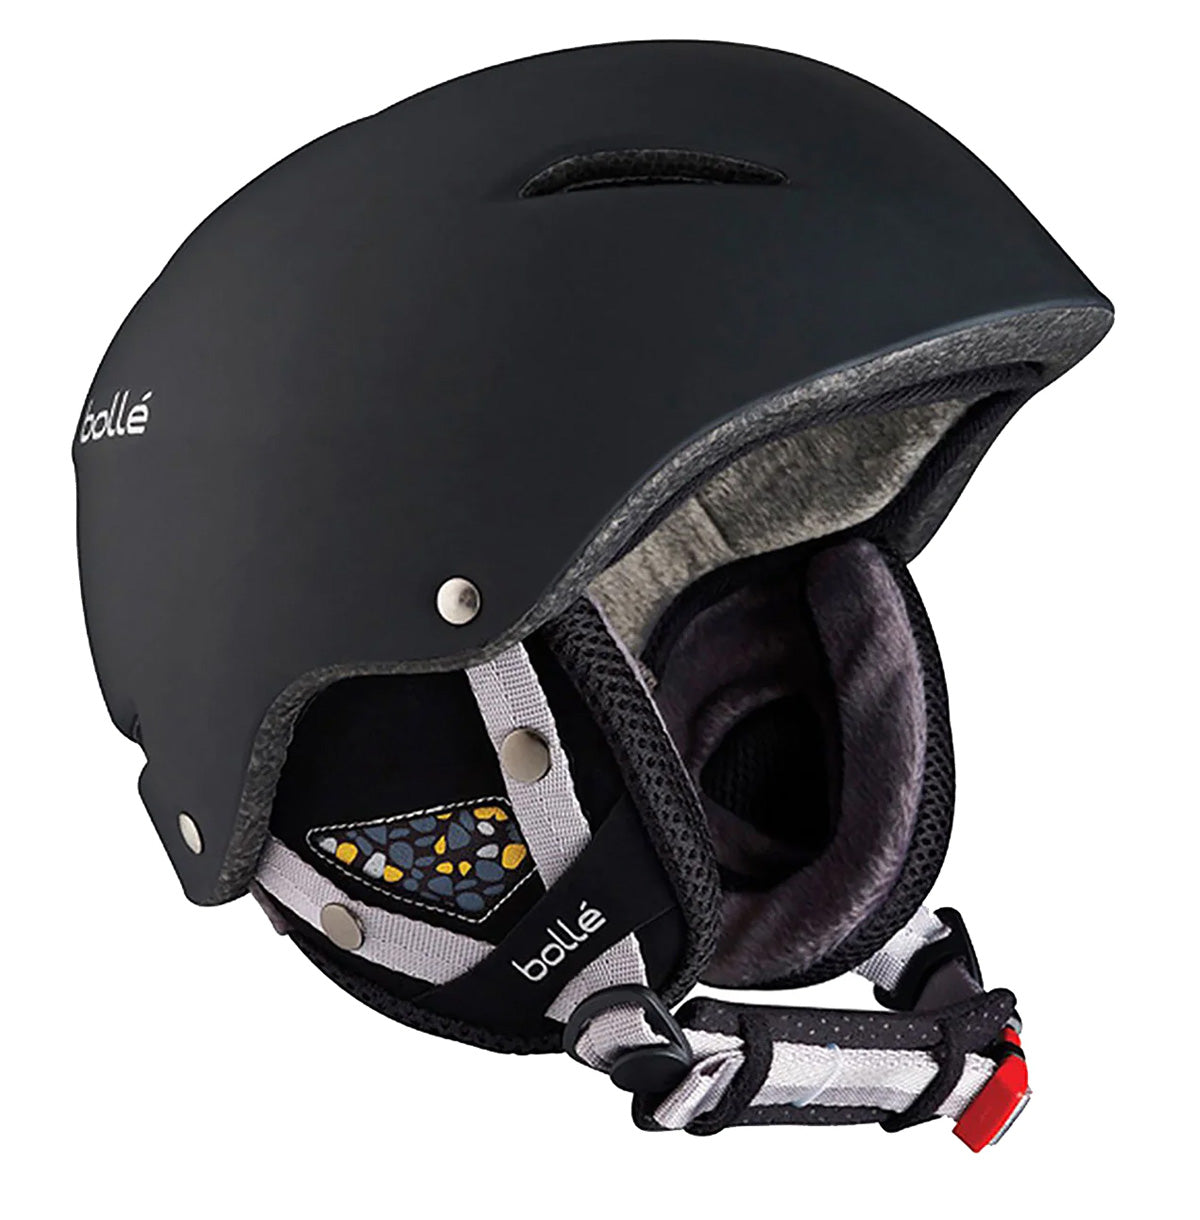 Bolle B-Star Adult Snow Helmets